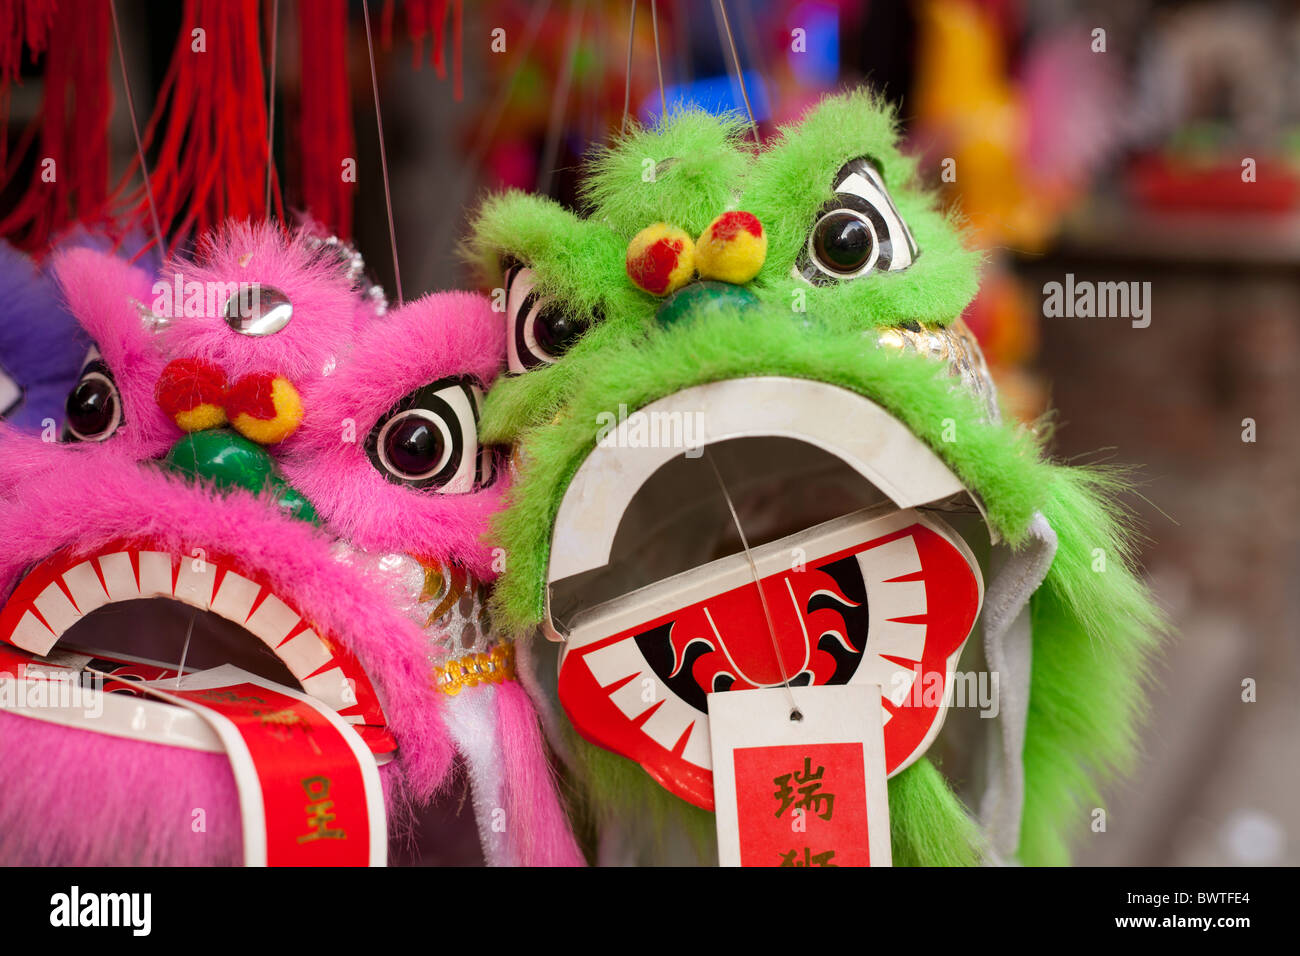 Toy dragon Stock Photo